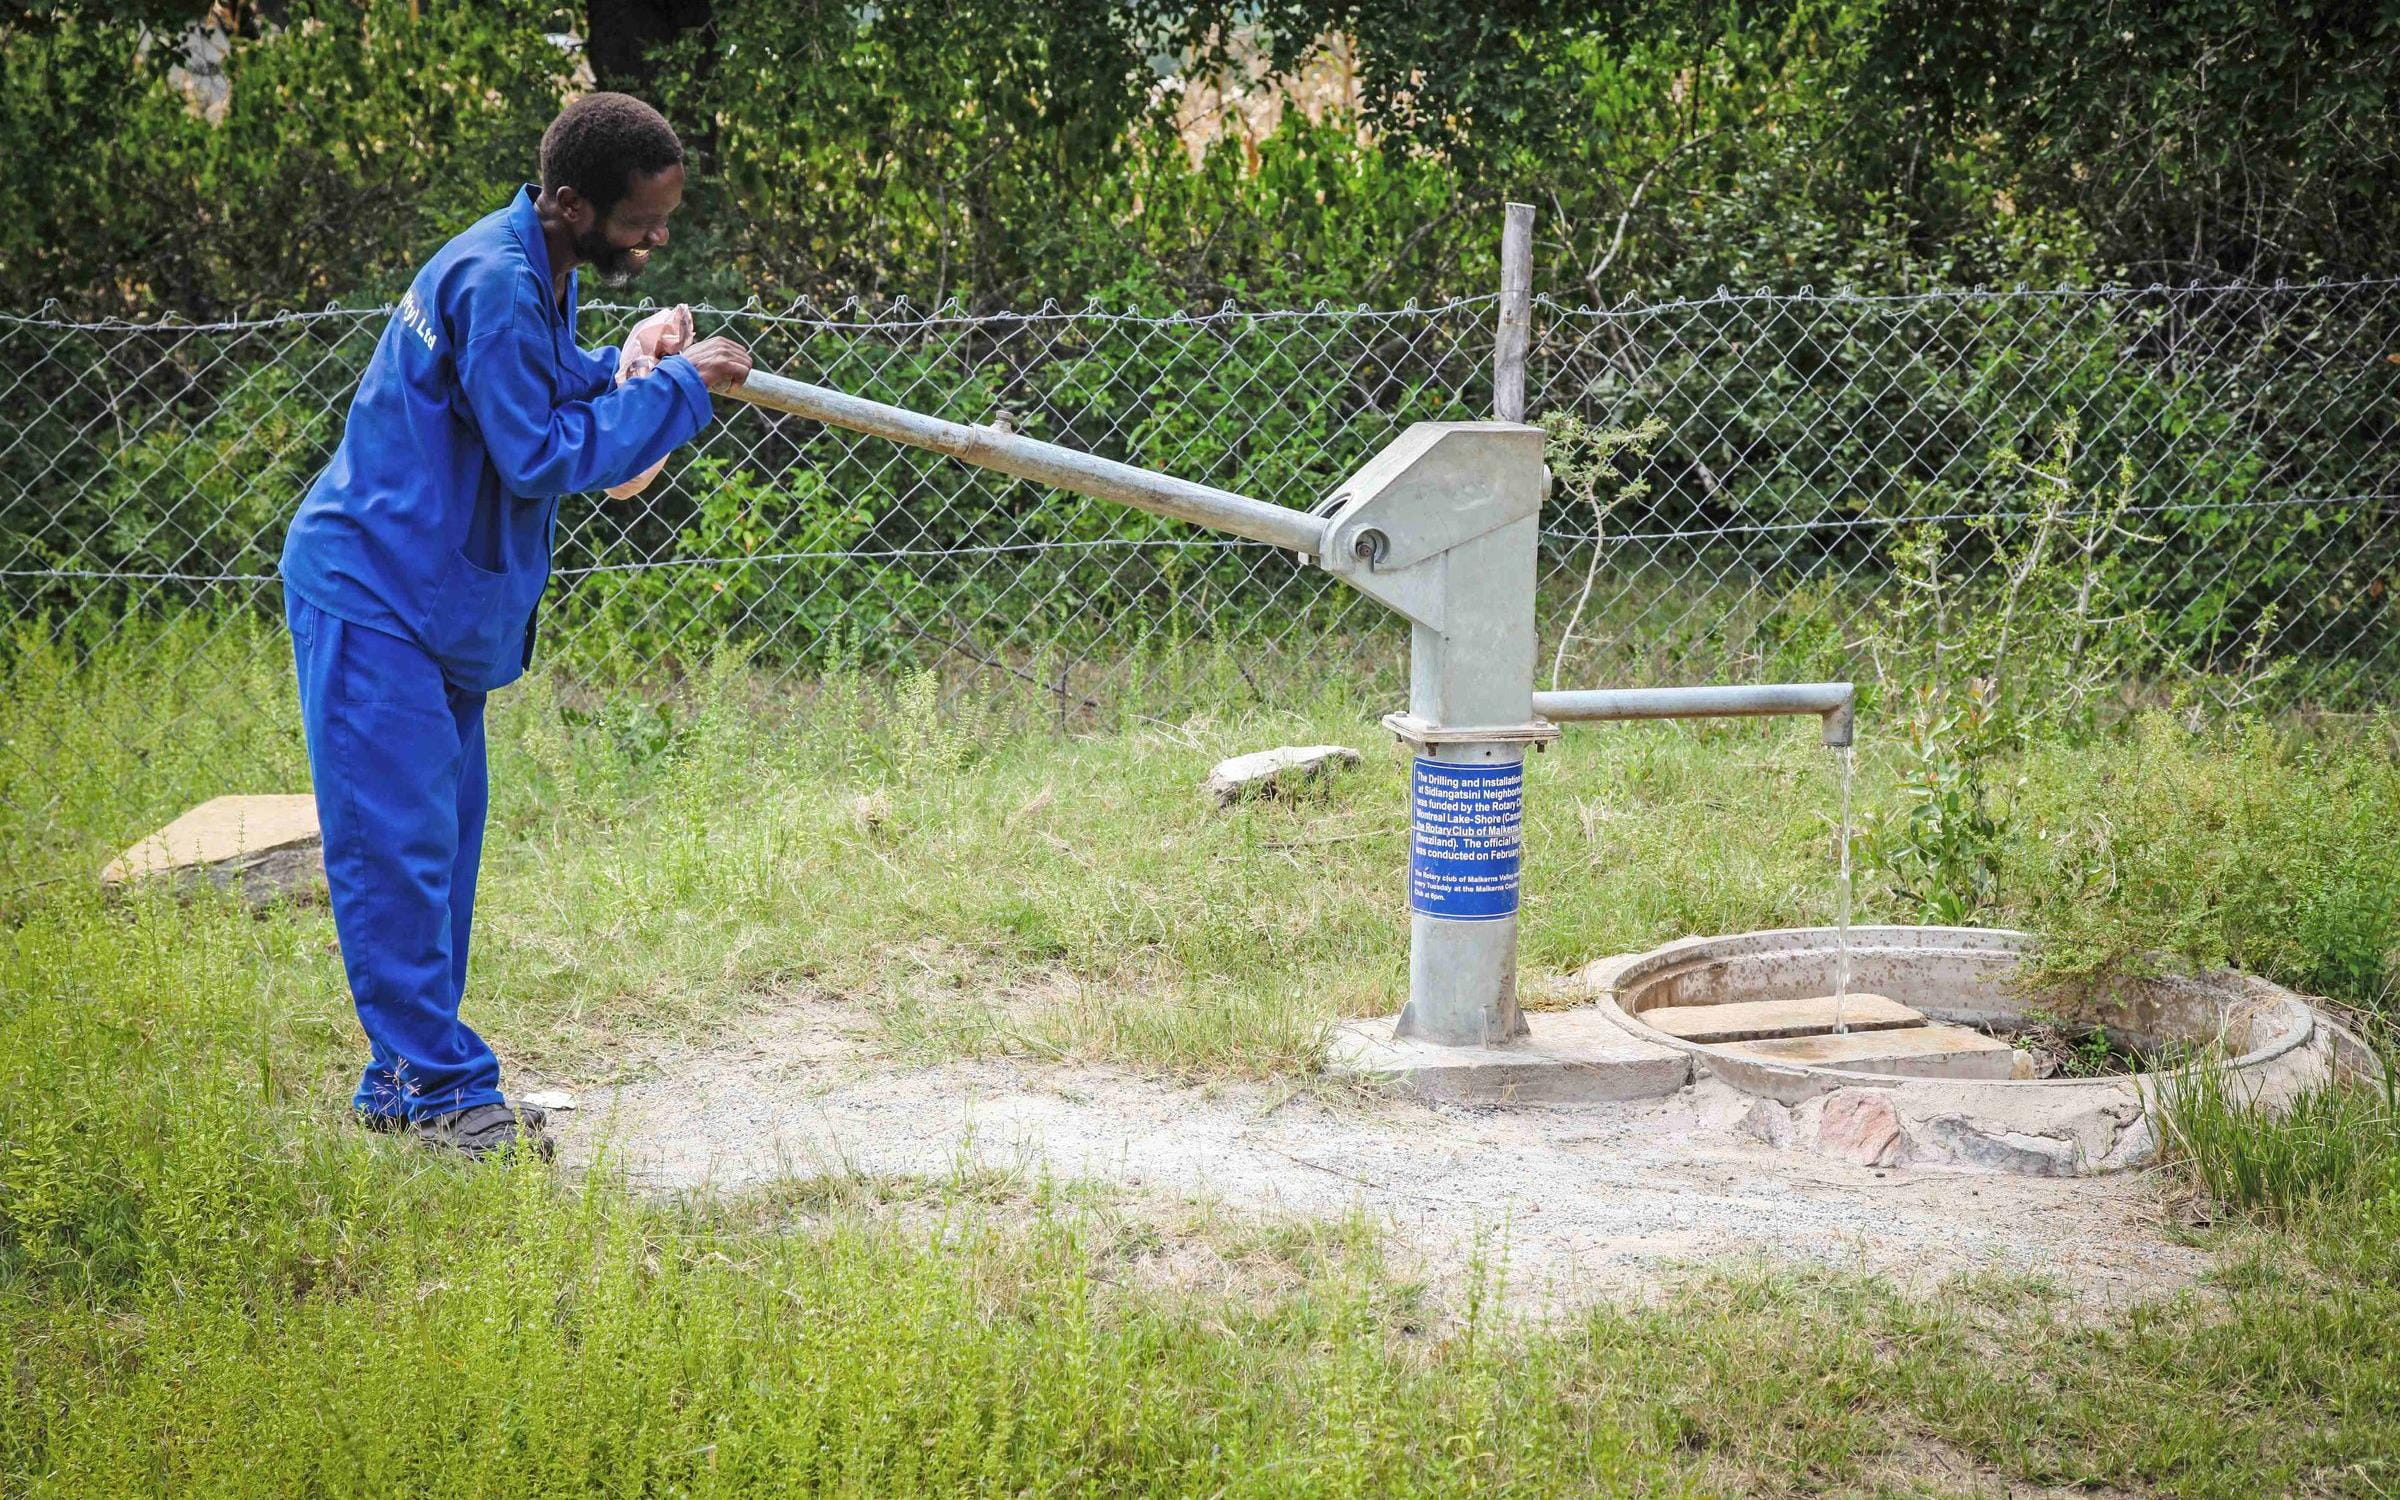 Foto: Ein Landwirtschaftsexperte pumpt Wasser in ein Auffangbecken (Quelle: Ralf Krämer, Kindernothilfe)